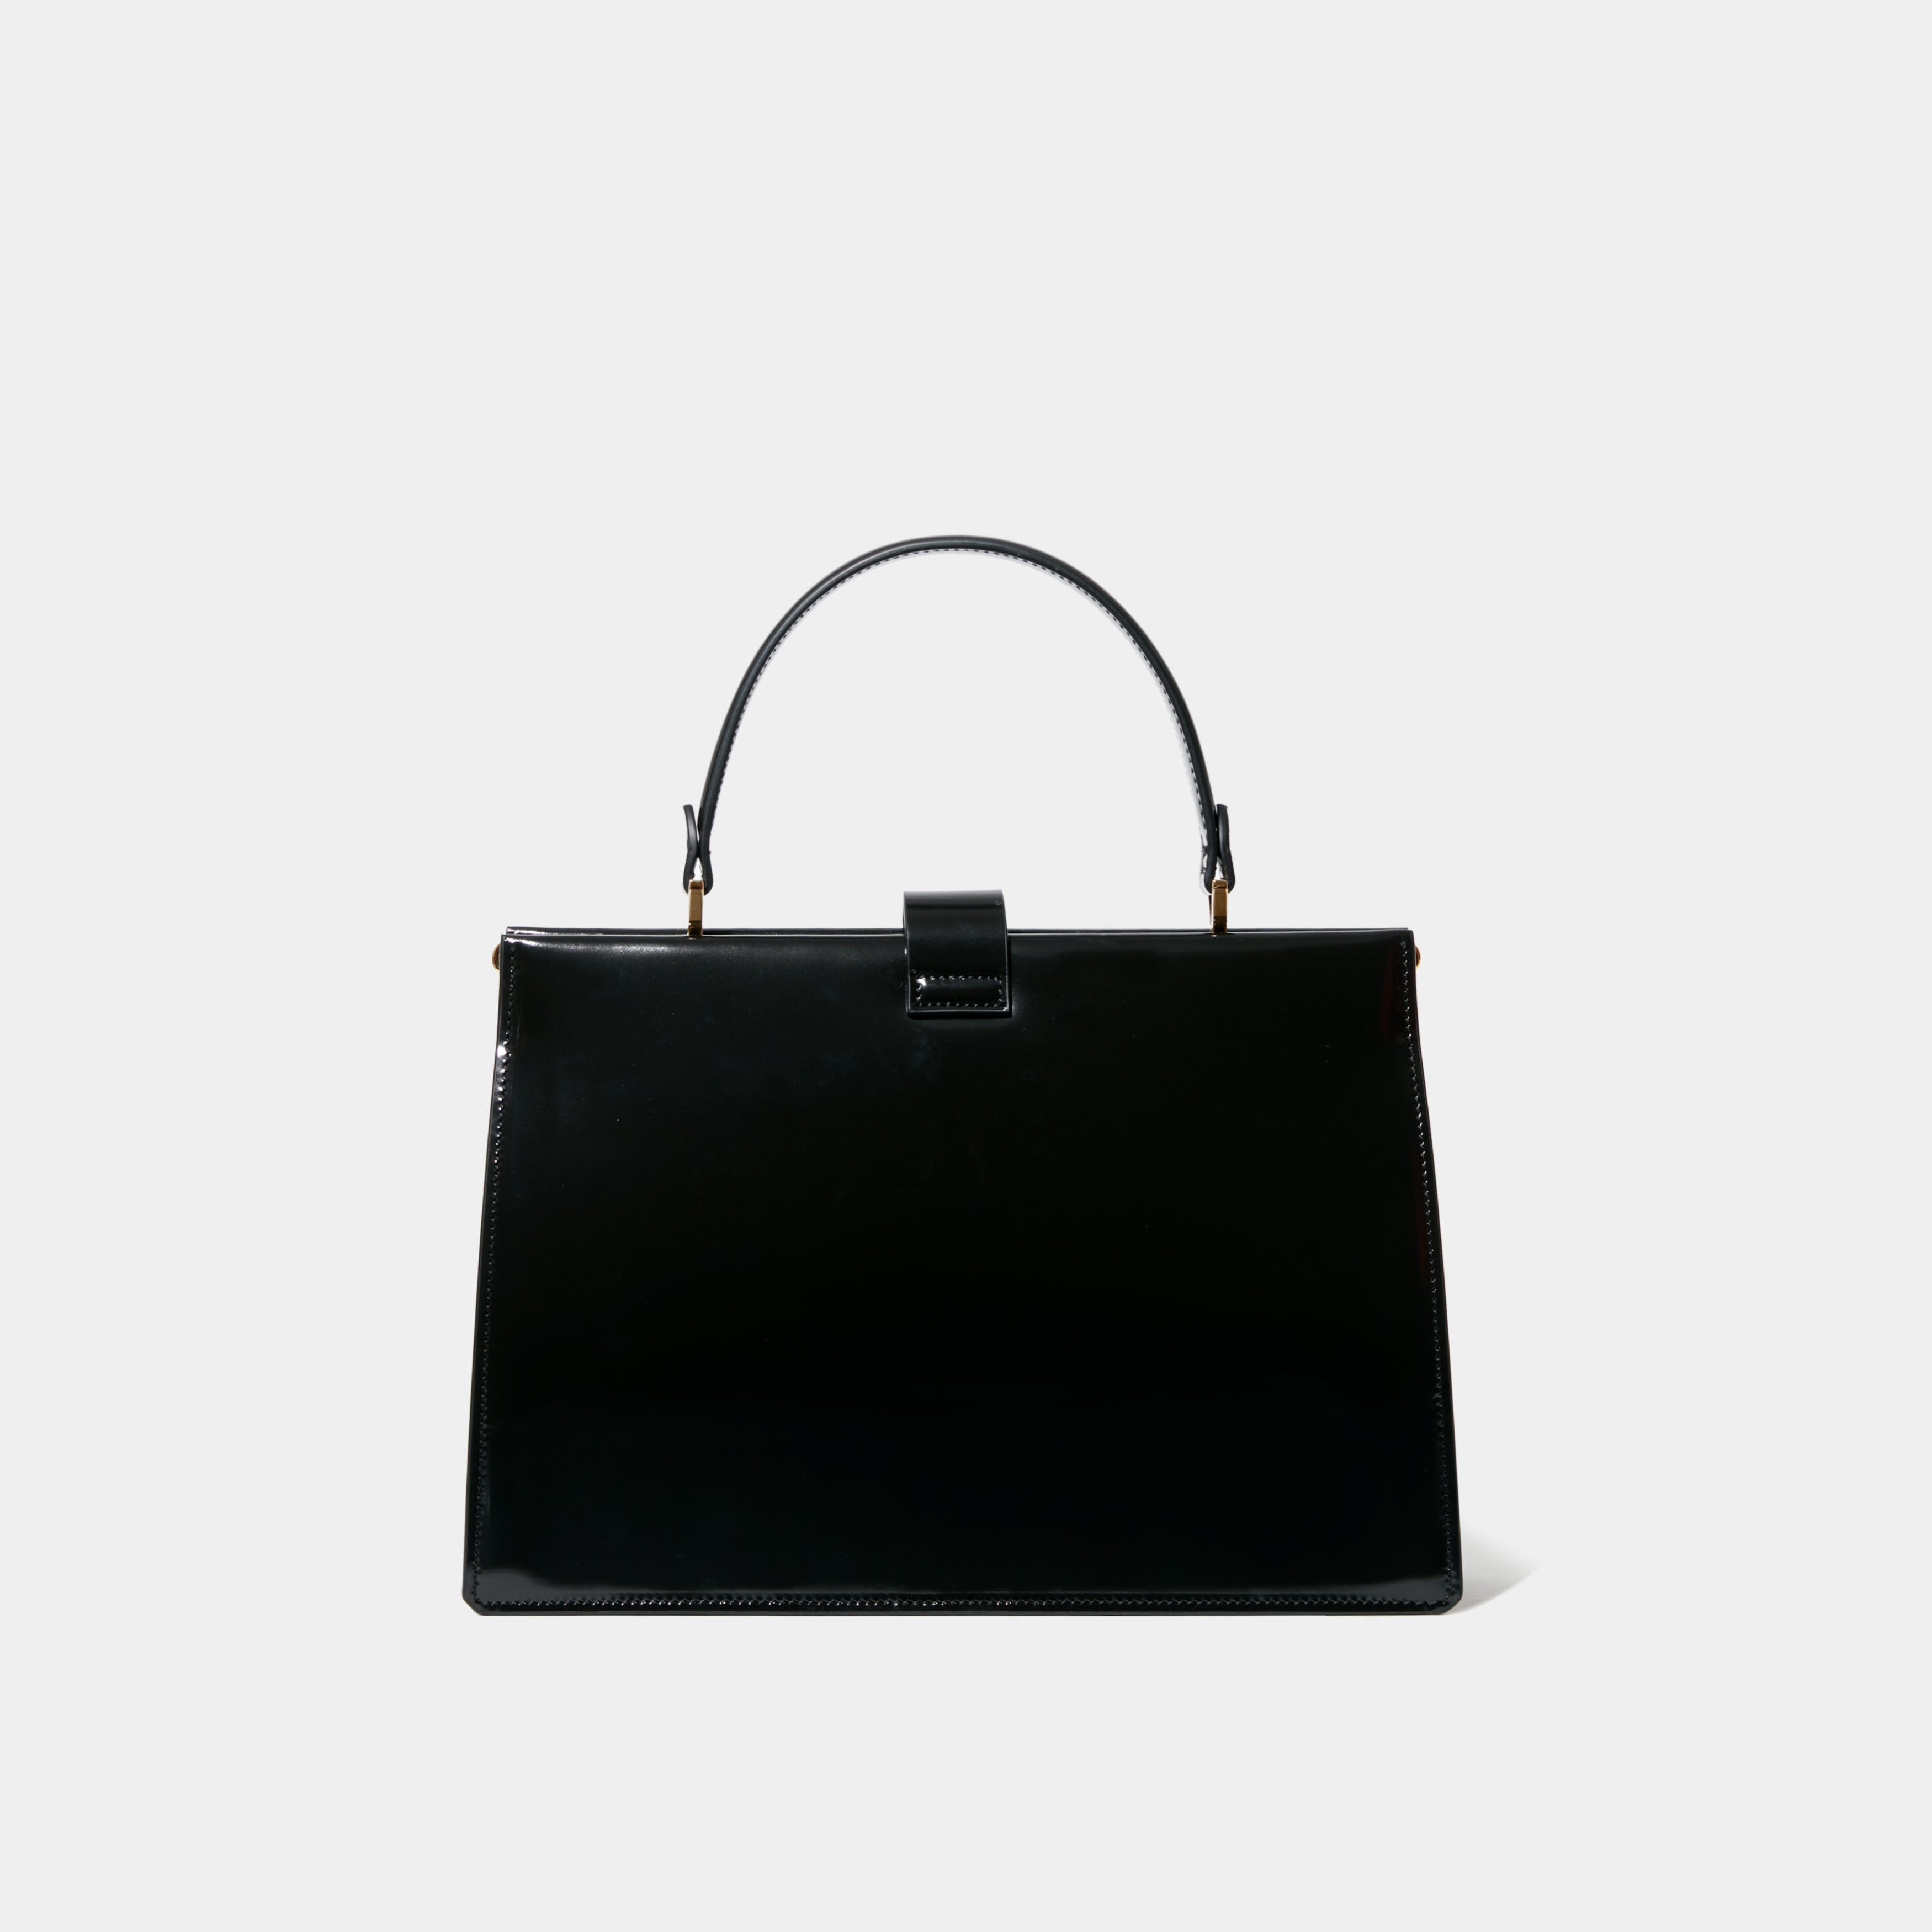 Le sac Elegant - Léo et Violette #black_patent_leather